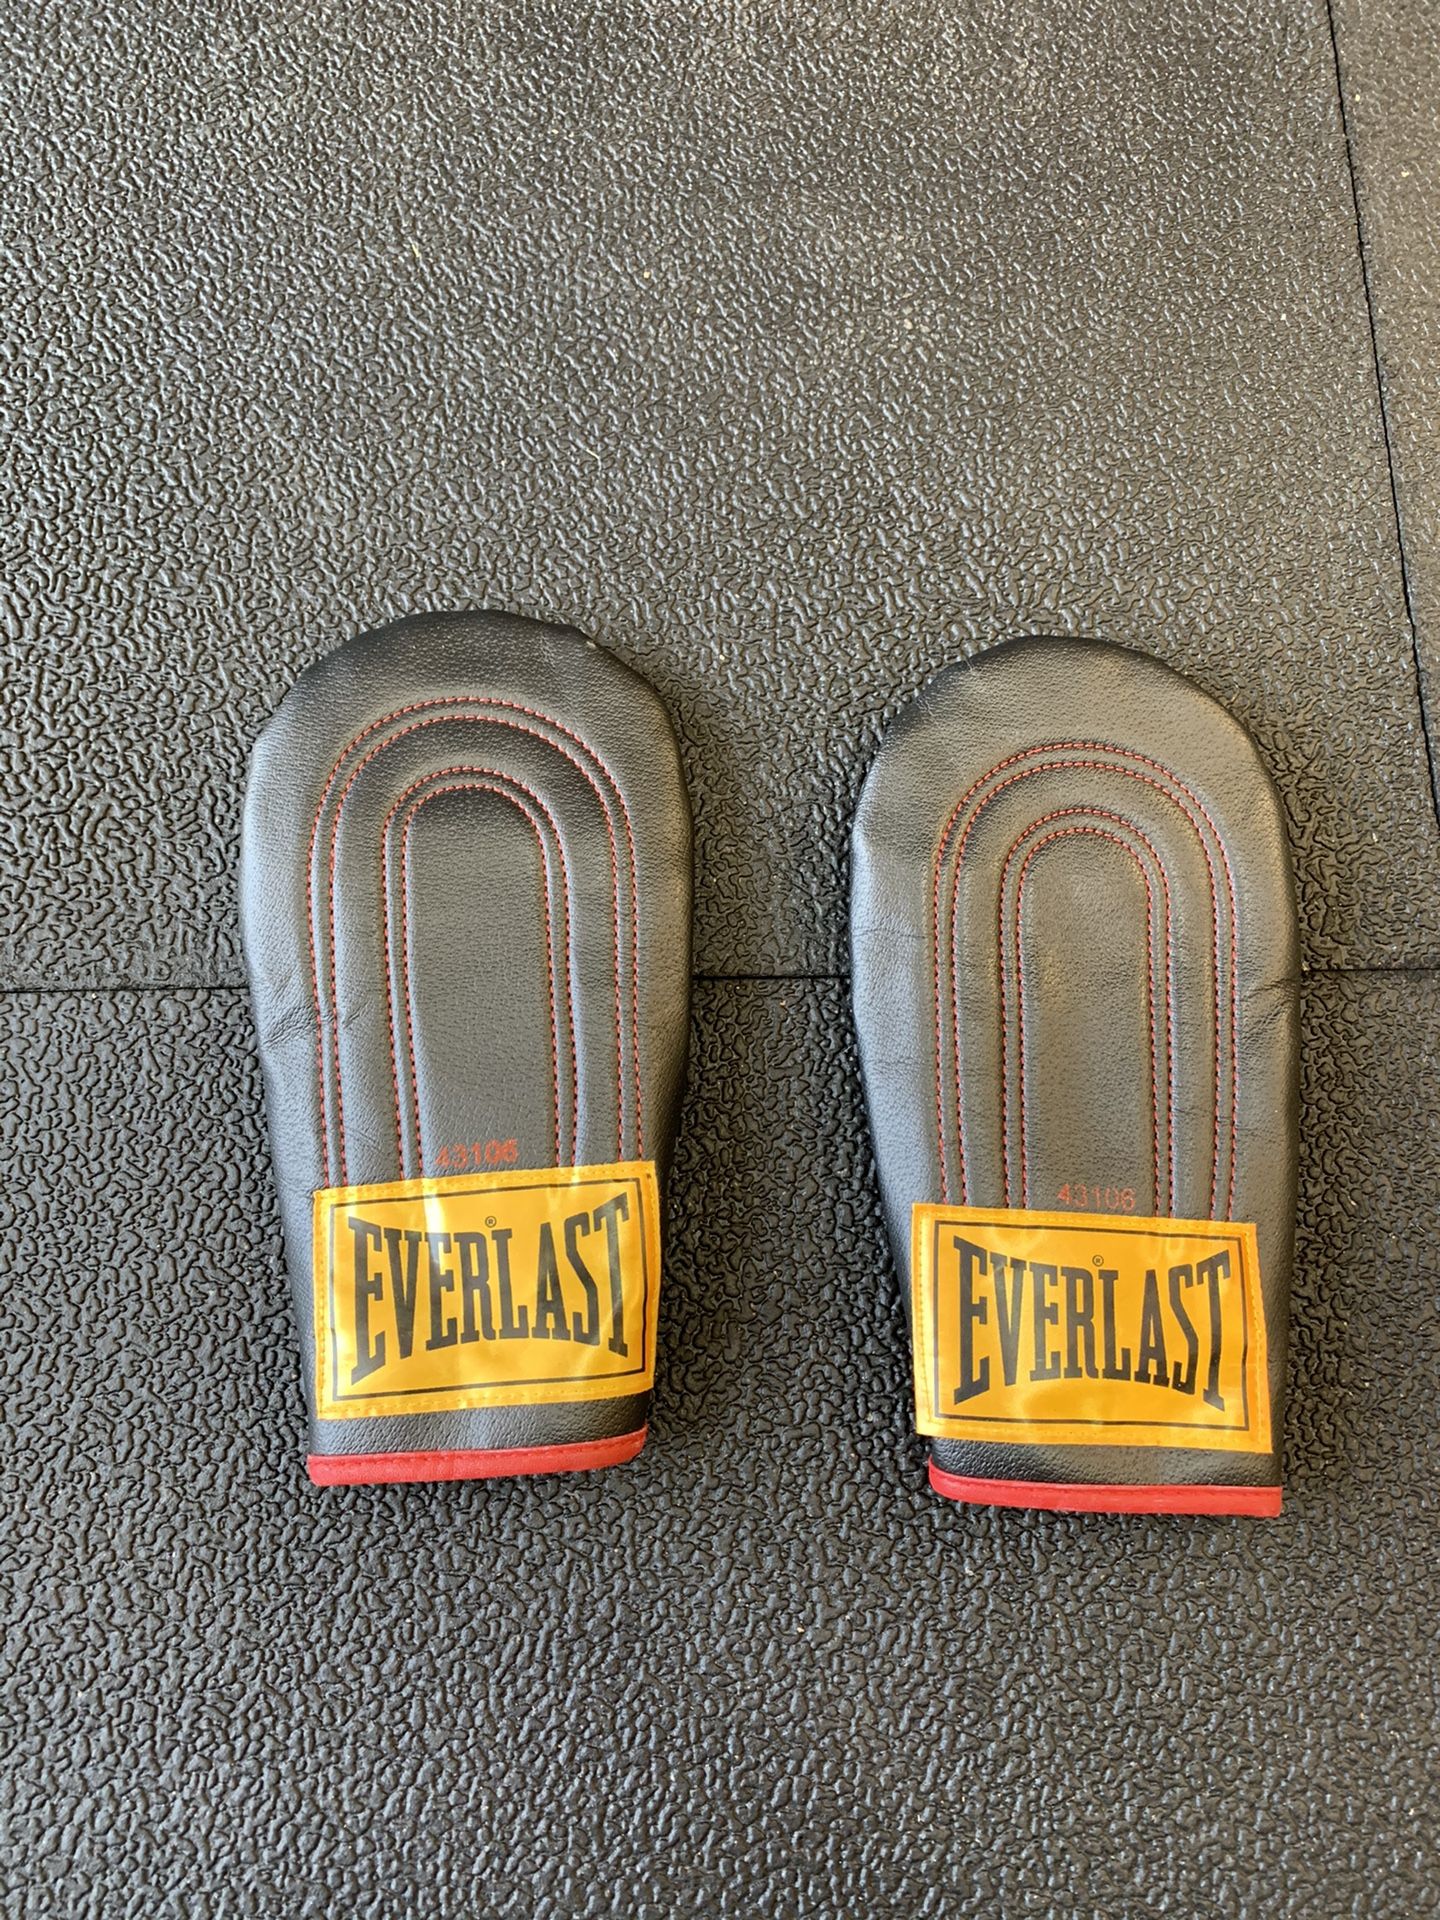 Everlast Boxing Training Gloves